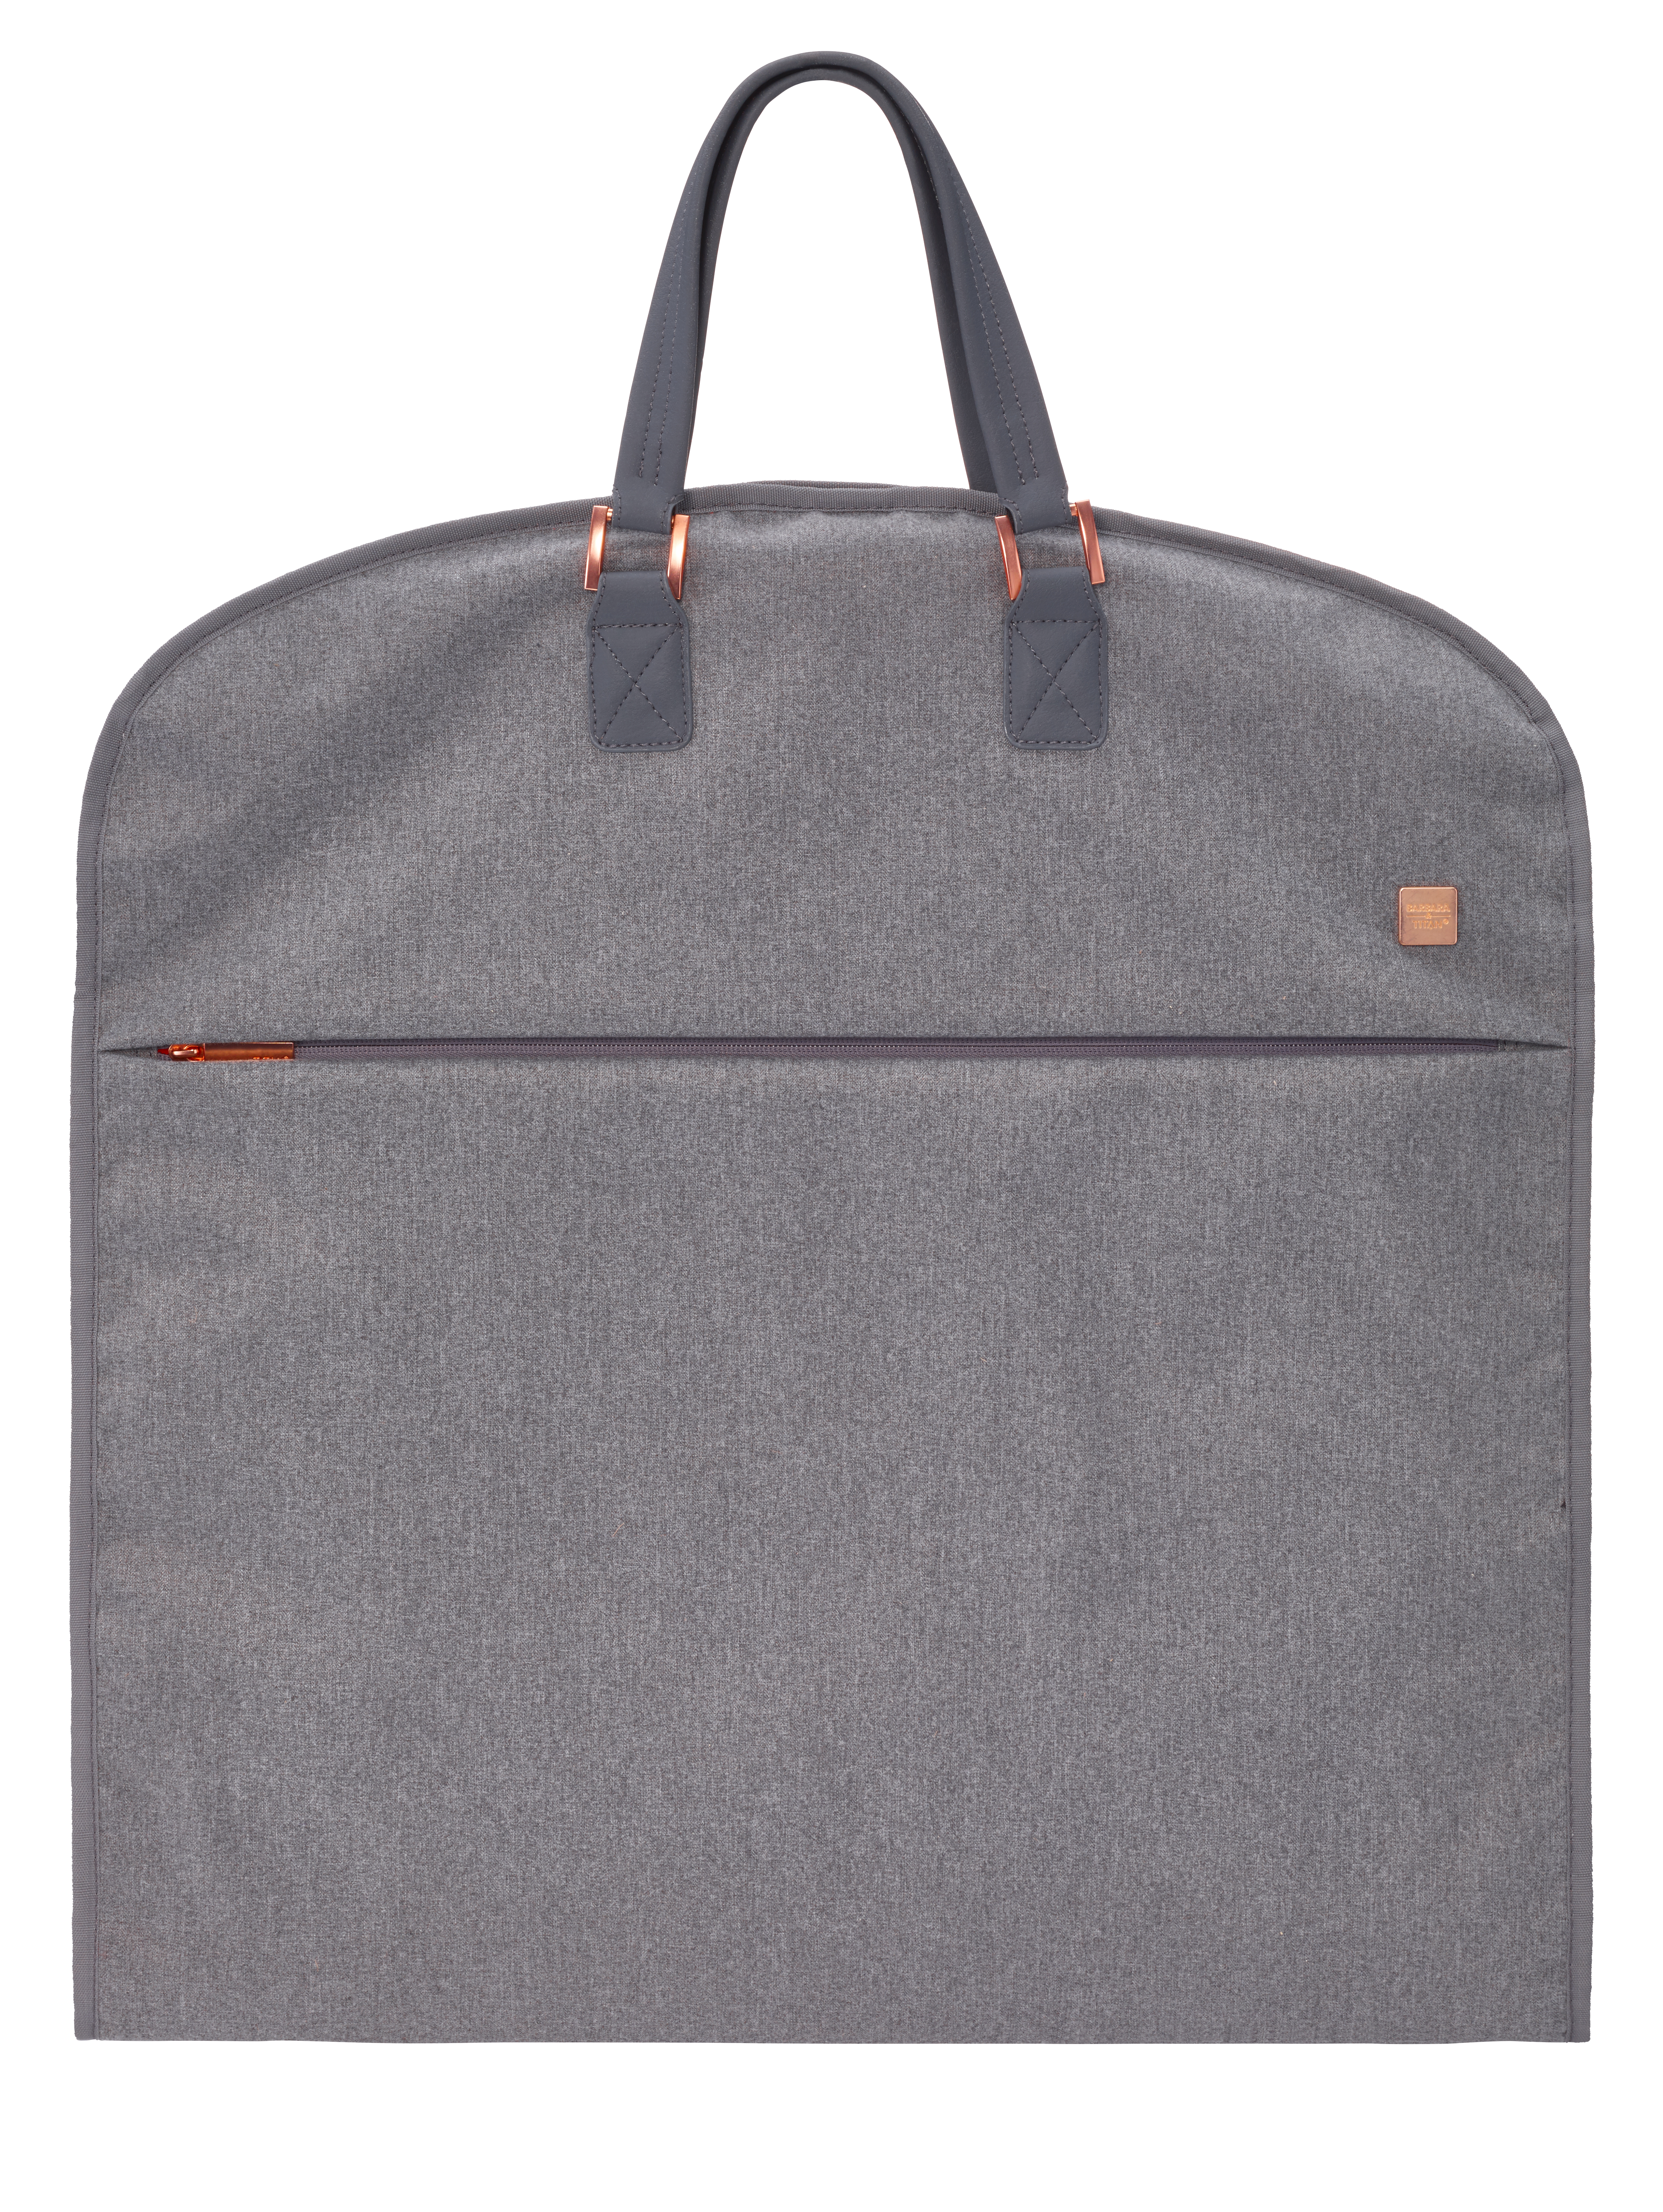 Travelite BARBARA Exclusive Garment Bag Tasche Kleidertasche Reise Gepck